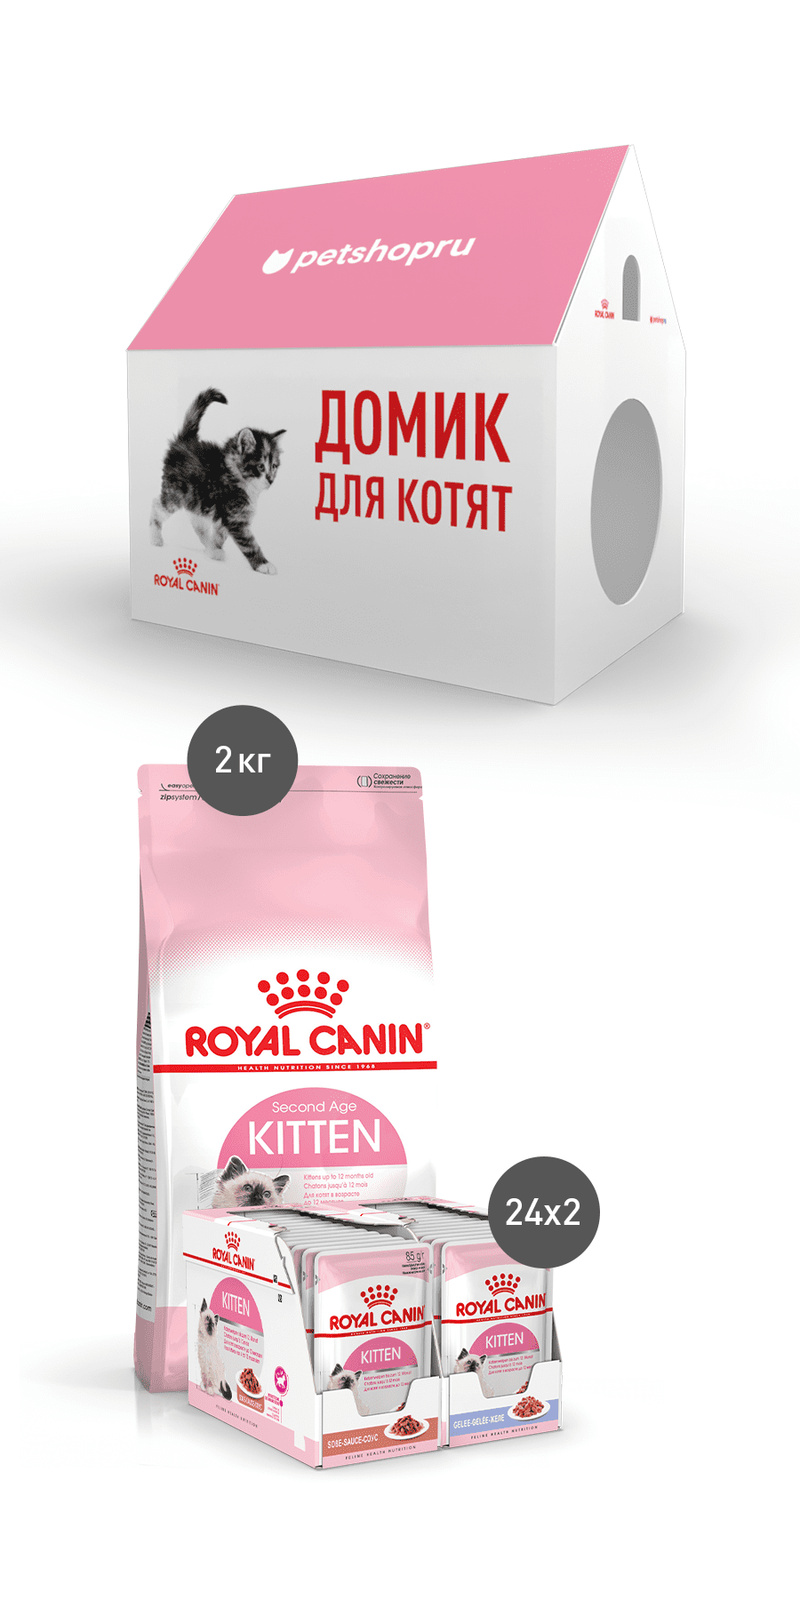 Royal Canin набор для котят: 2 кг сухого корма, 48 паучей и картонный домик (6,08 кг)